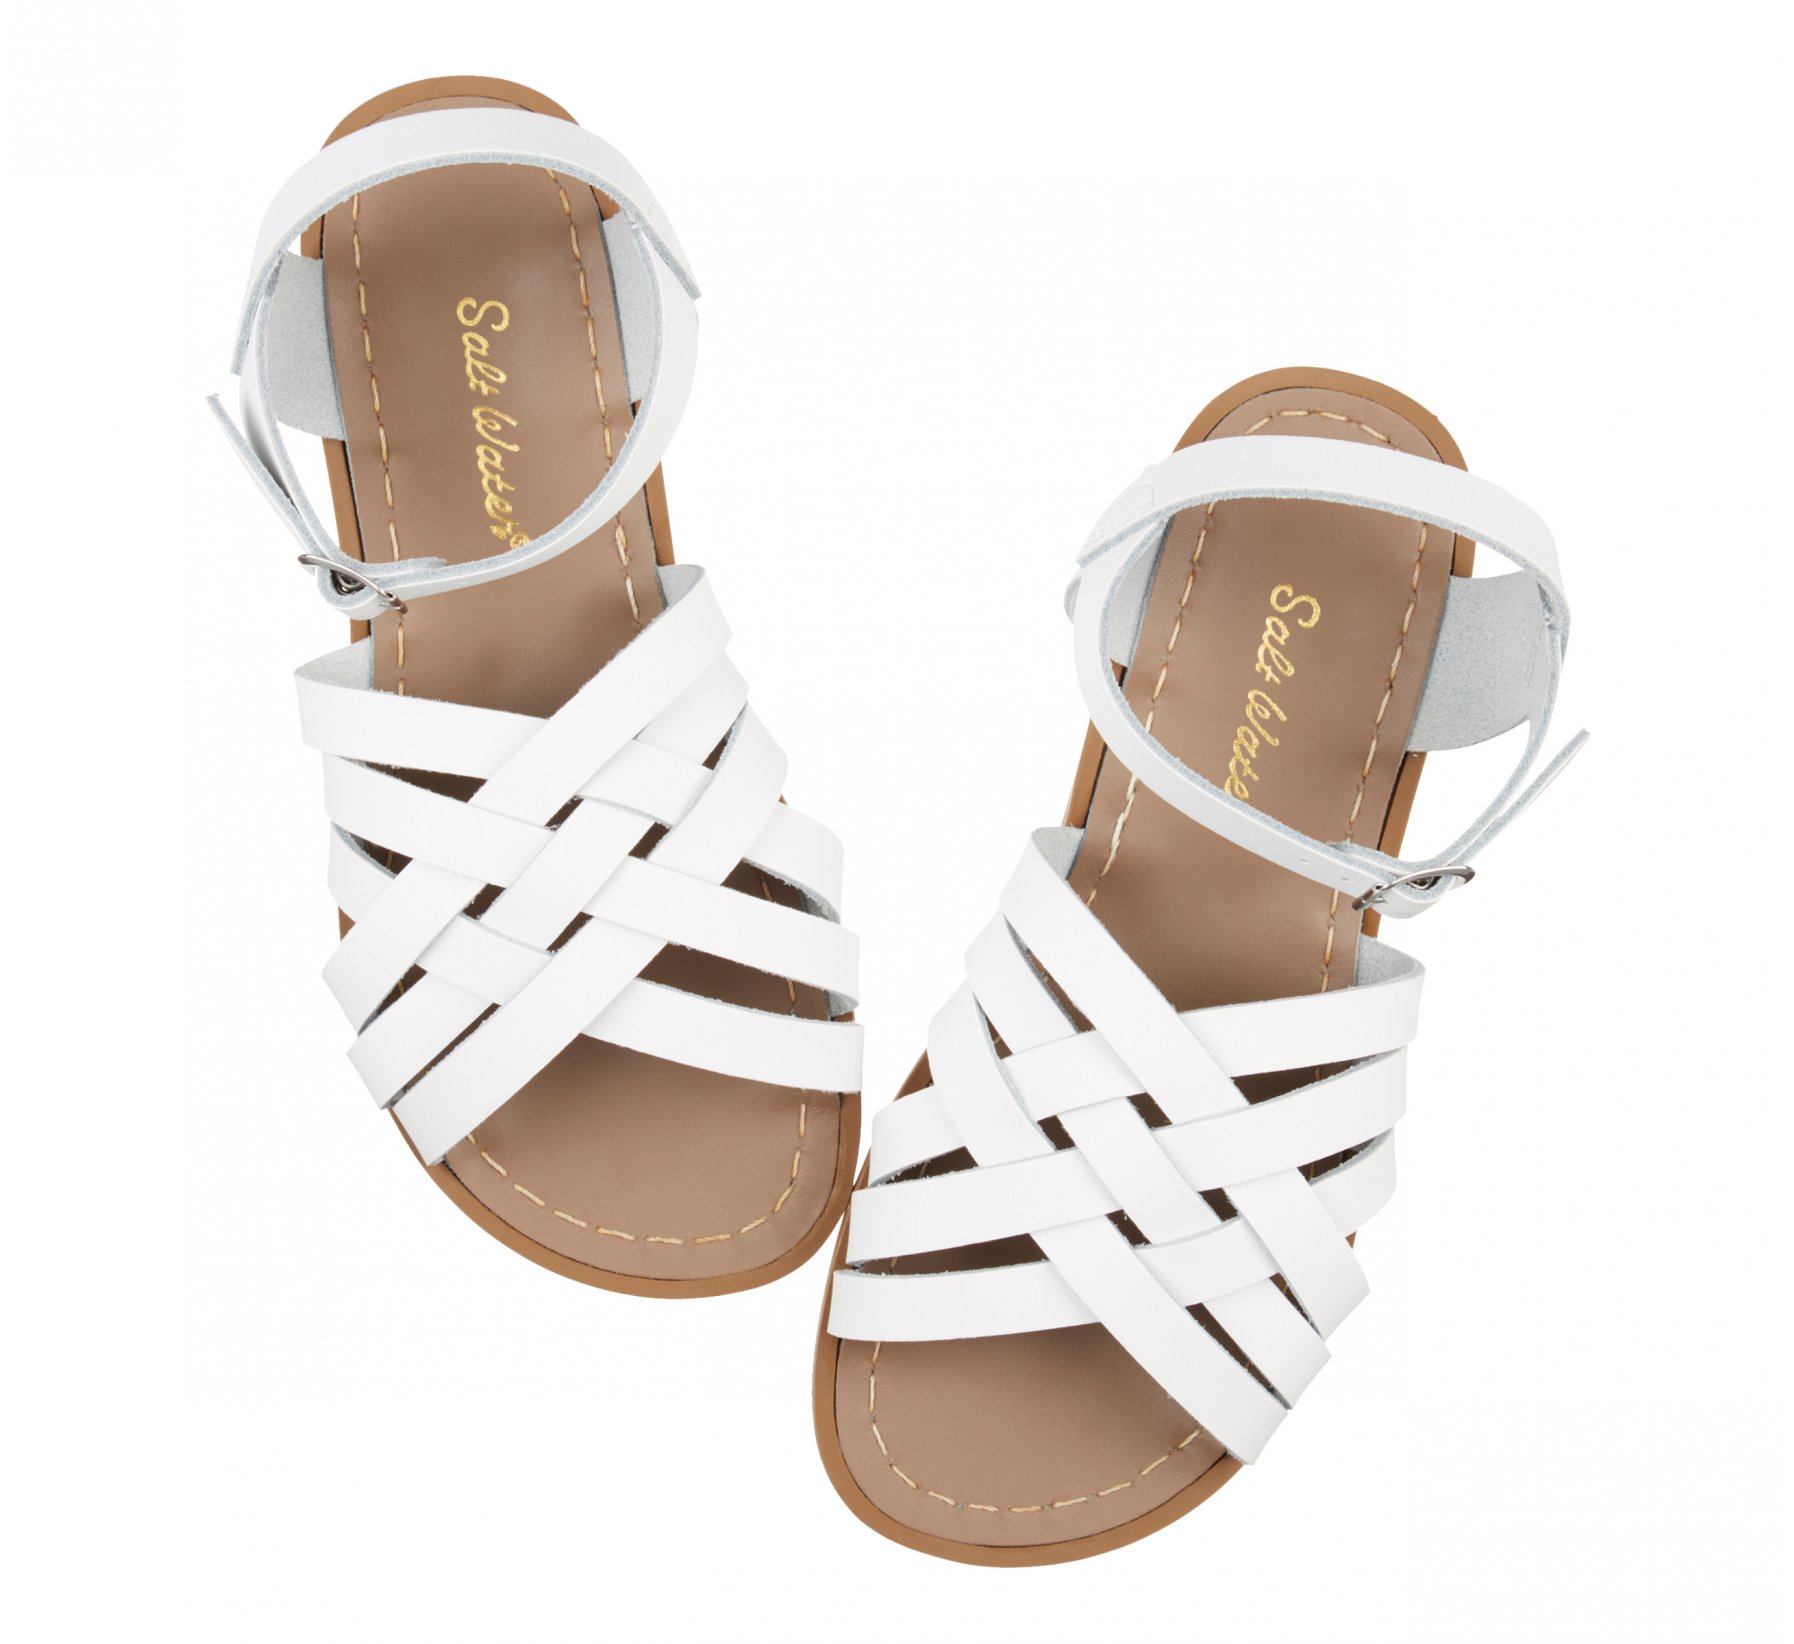 Retro White Kids Sandals - Salt Water Sandals